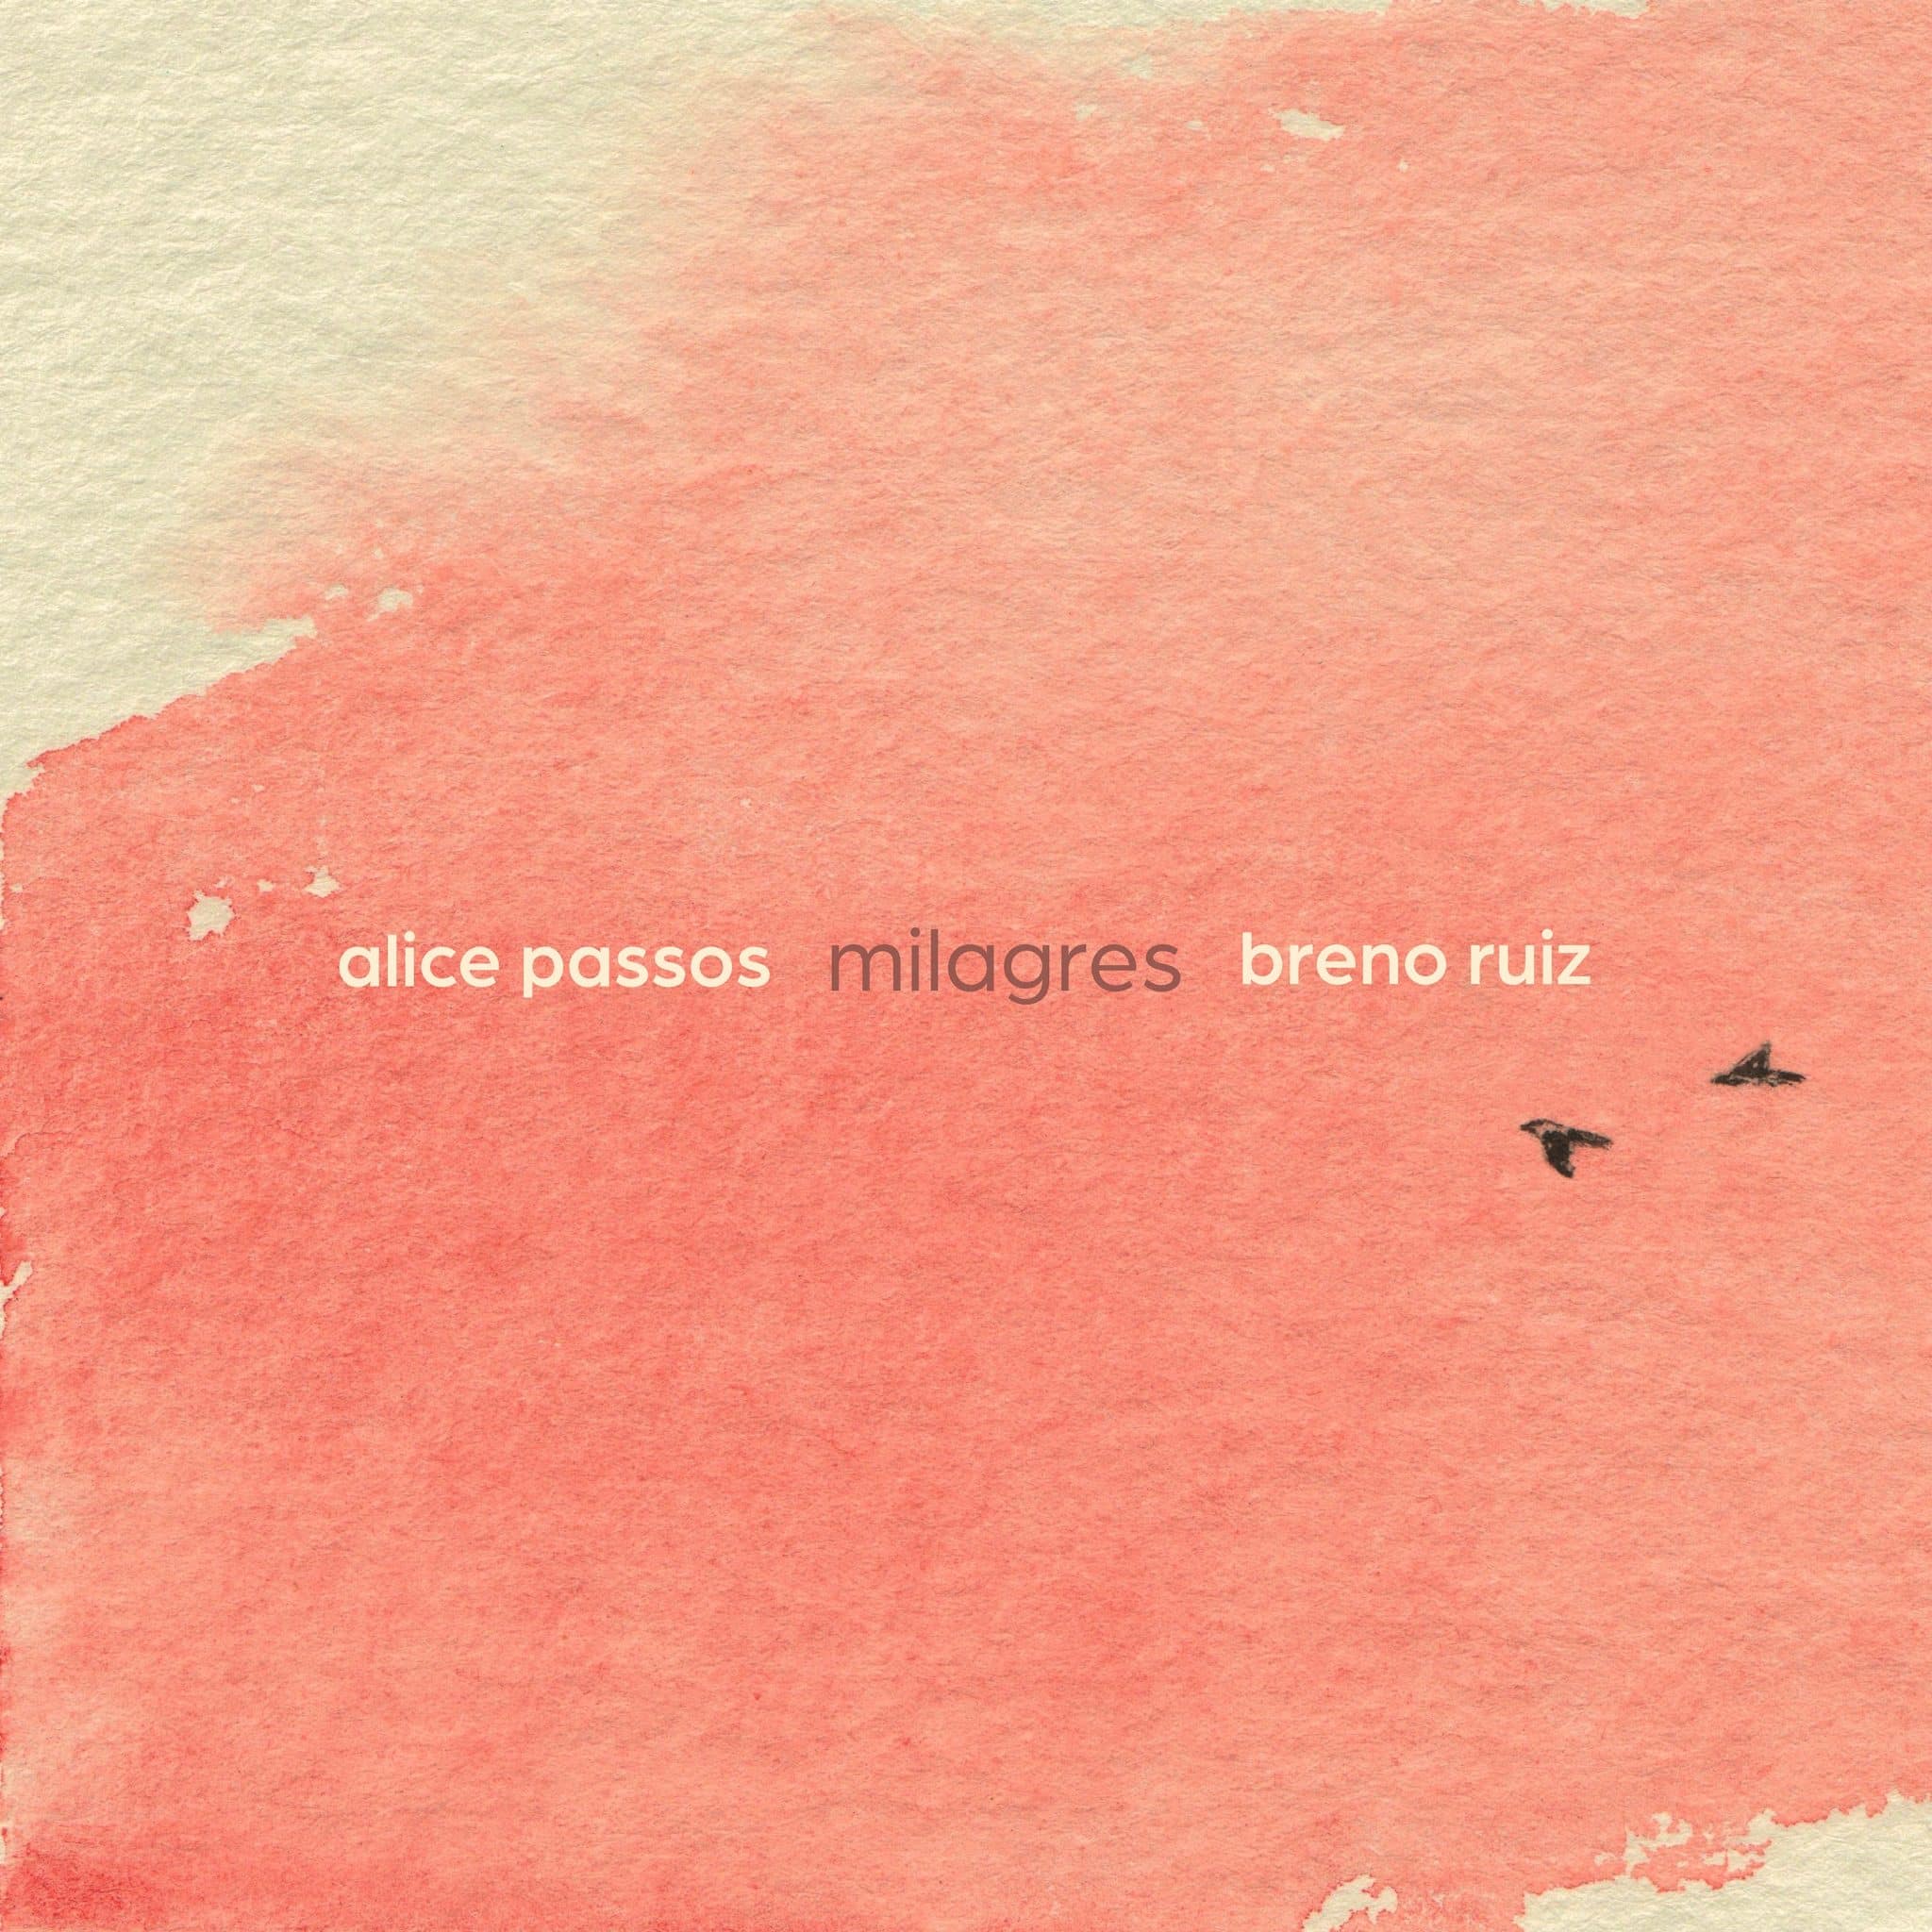 revistaprosaversoearte.com - 'Milagres' - álbum de Alice Passos e Breno Ruiz, lançado pela Biscoito Fino